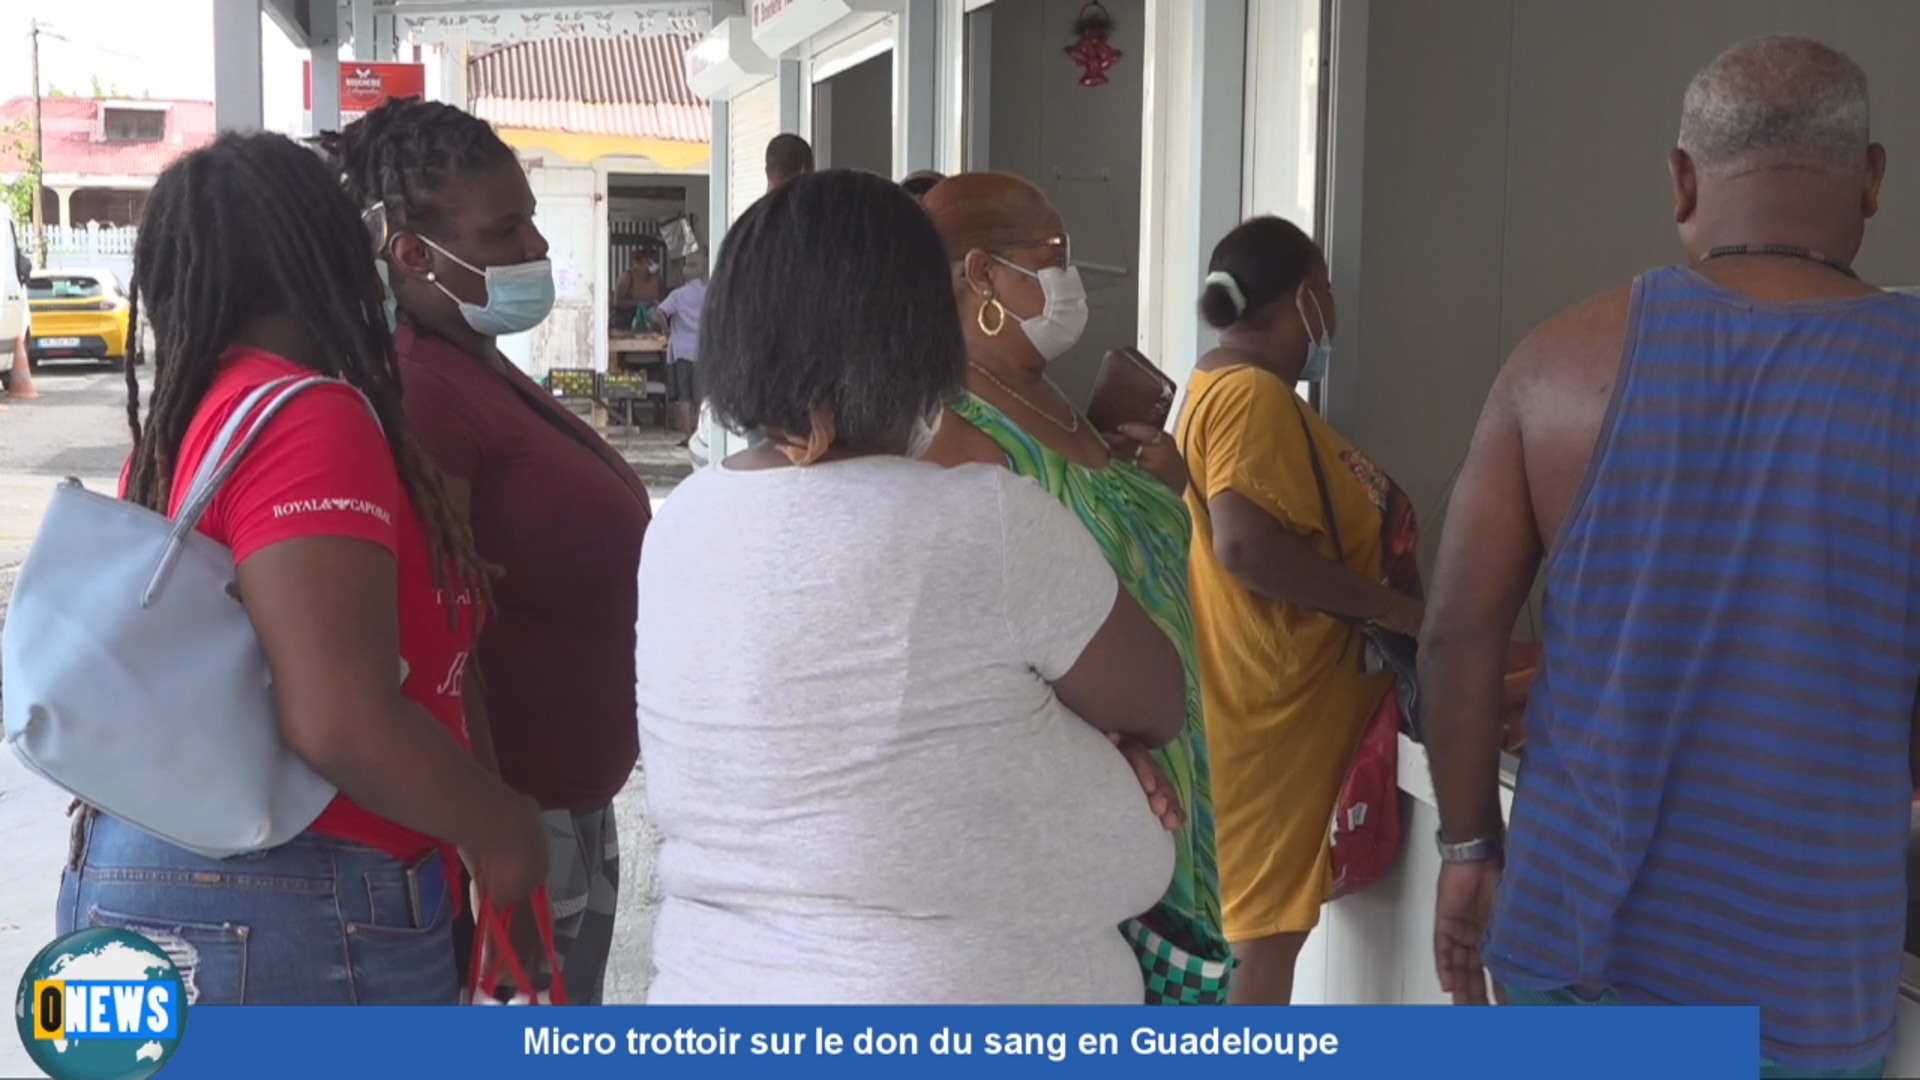 [Vidéo] Onews Guadeloupe.Micro trottoir sur le don du sang en Guadeloupe